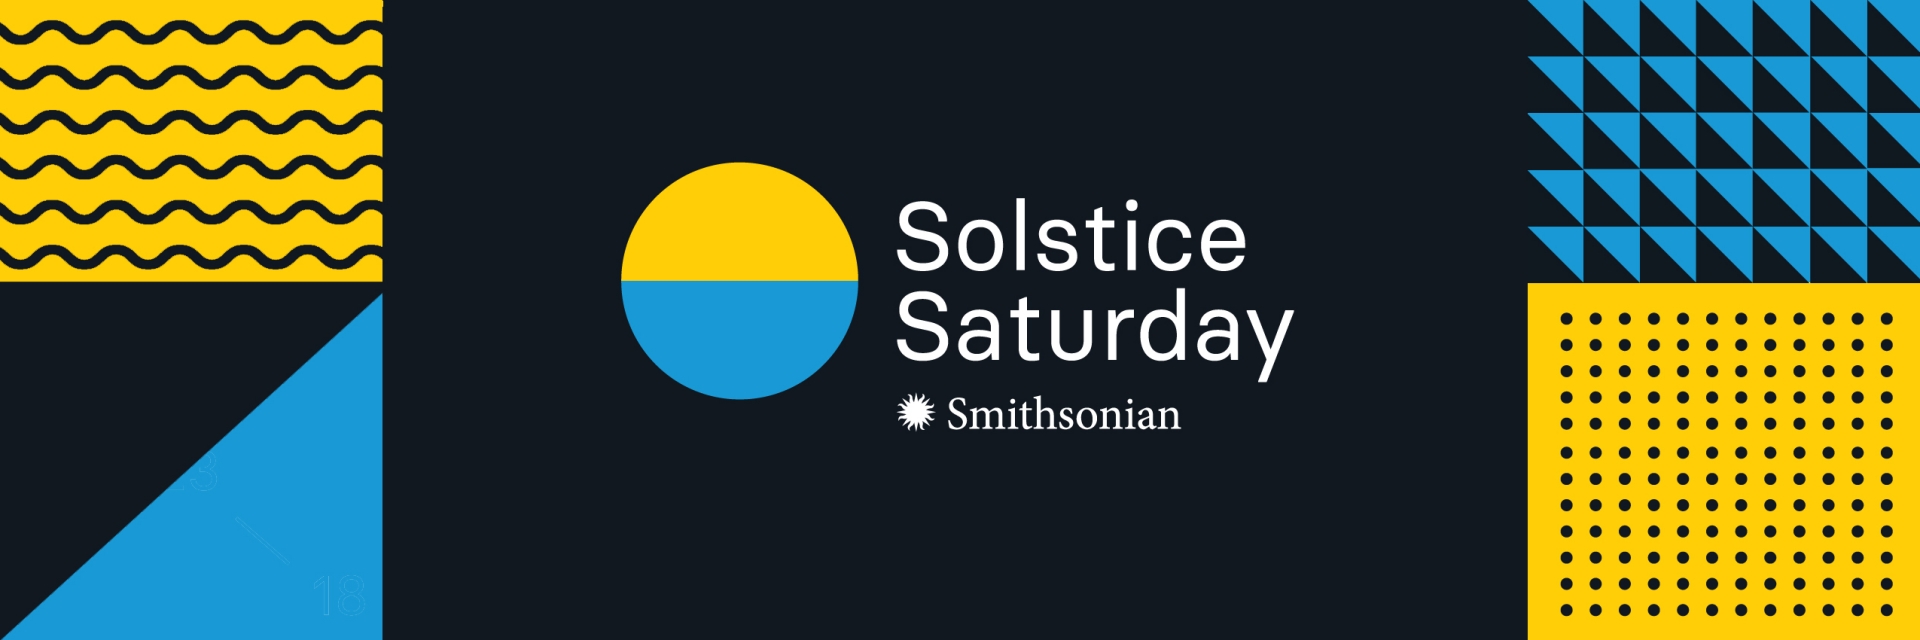 Solstice Saturday